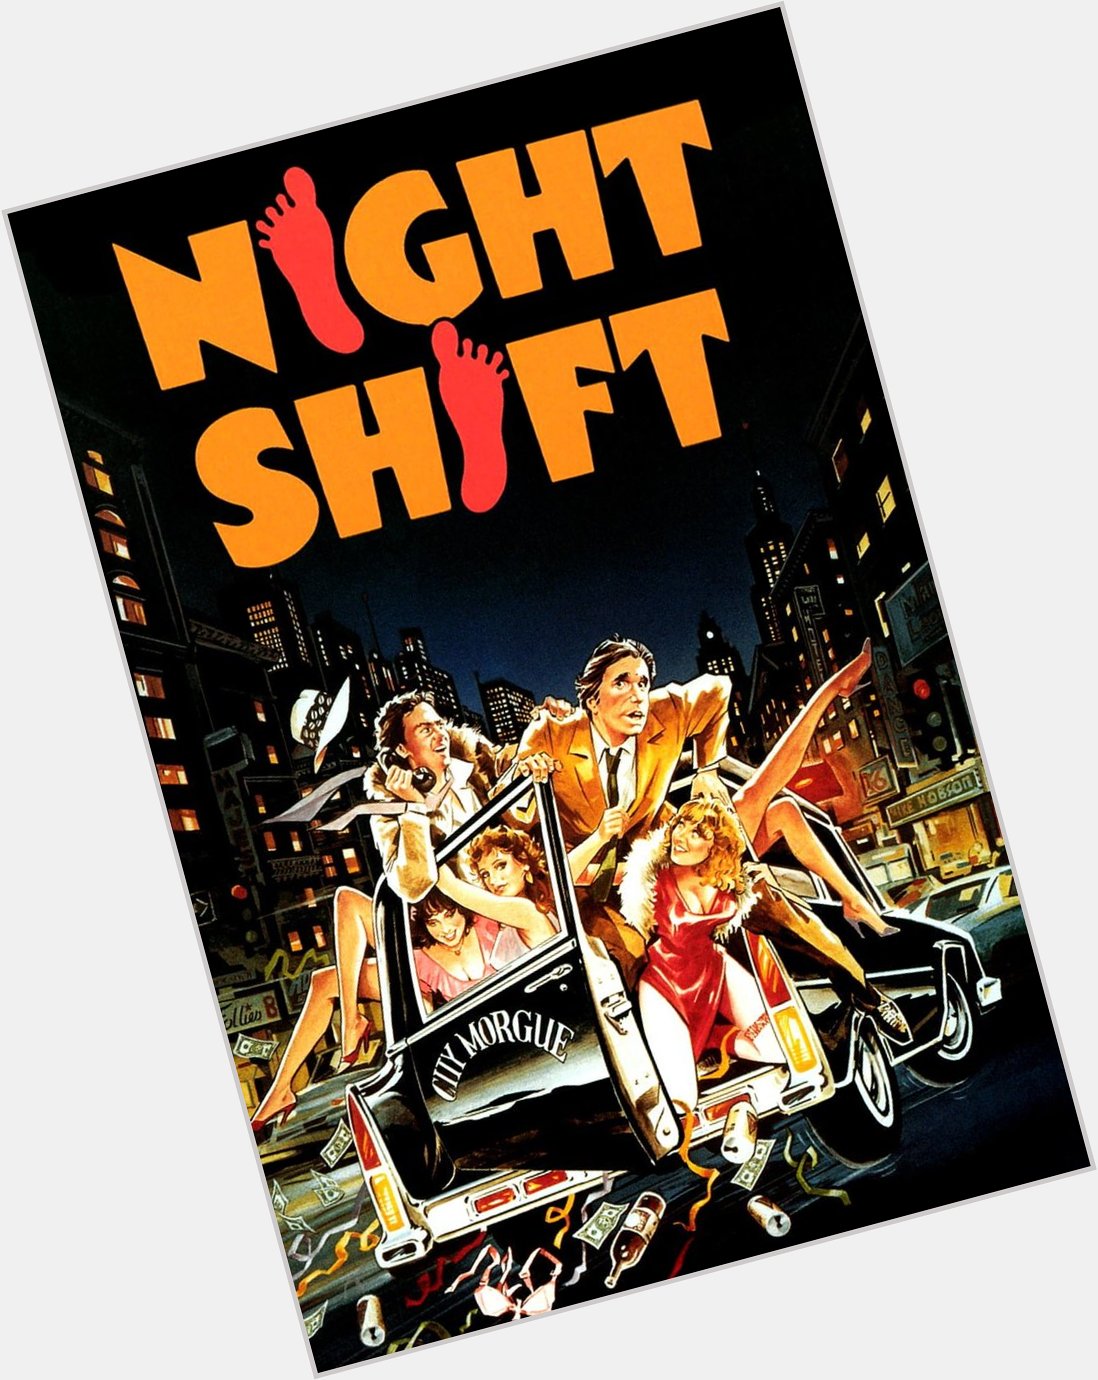 Night Shift  (1982)
Happy Birthday, Henry Winkler! 